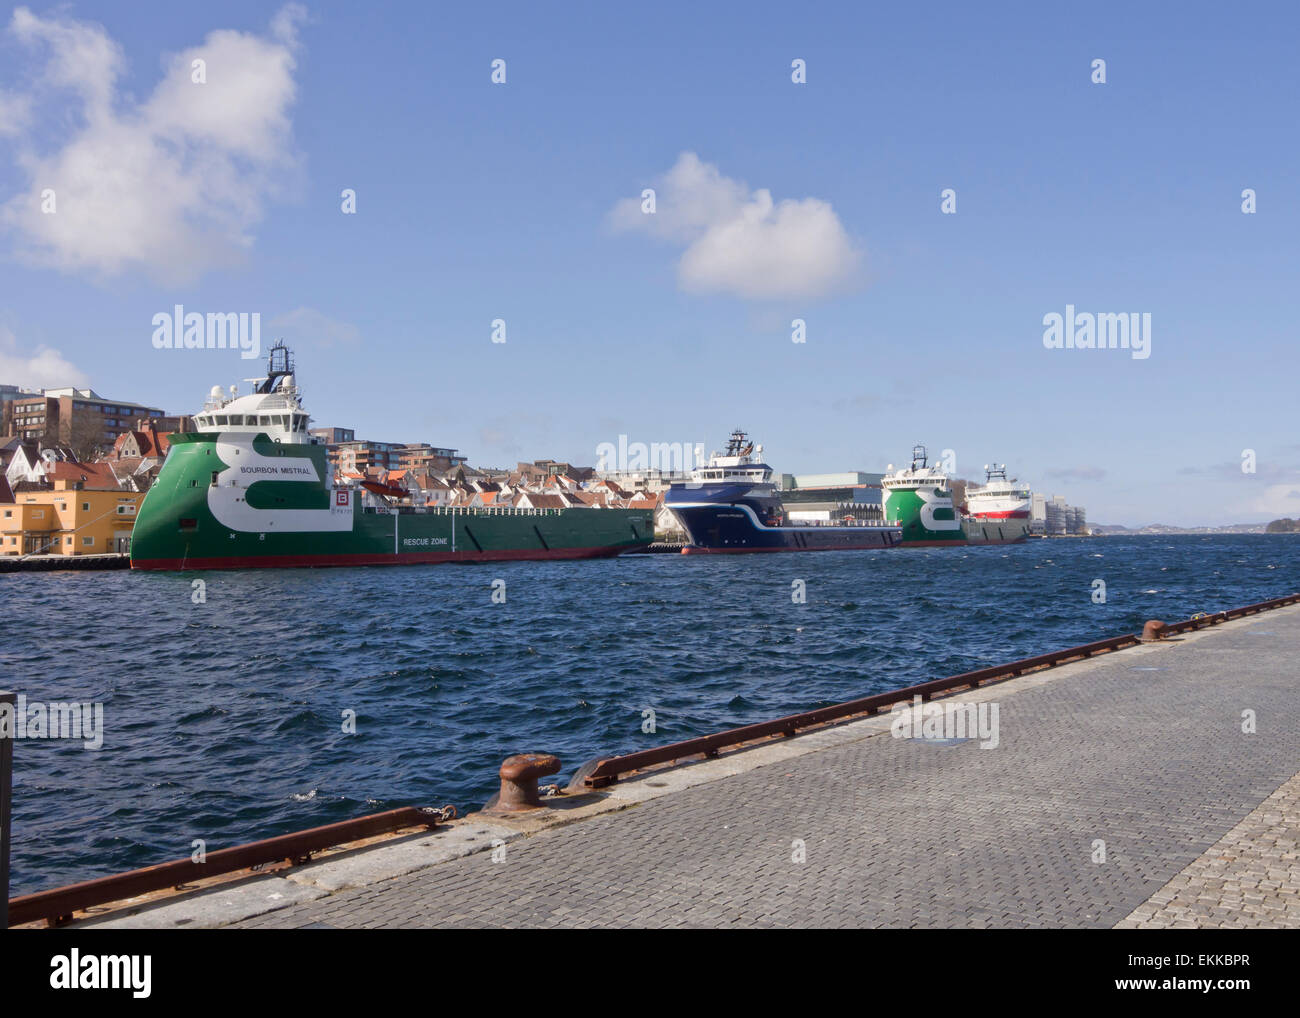 Port de Stavanger en plein milieu de la ville a des visites fréquentes par les navires d'approvisionnement de l'industrie pétrolière moderne Banque D'Images